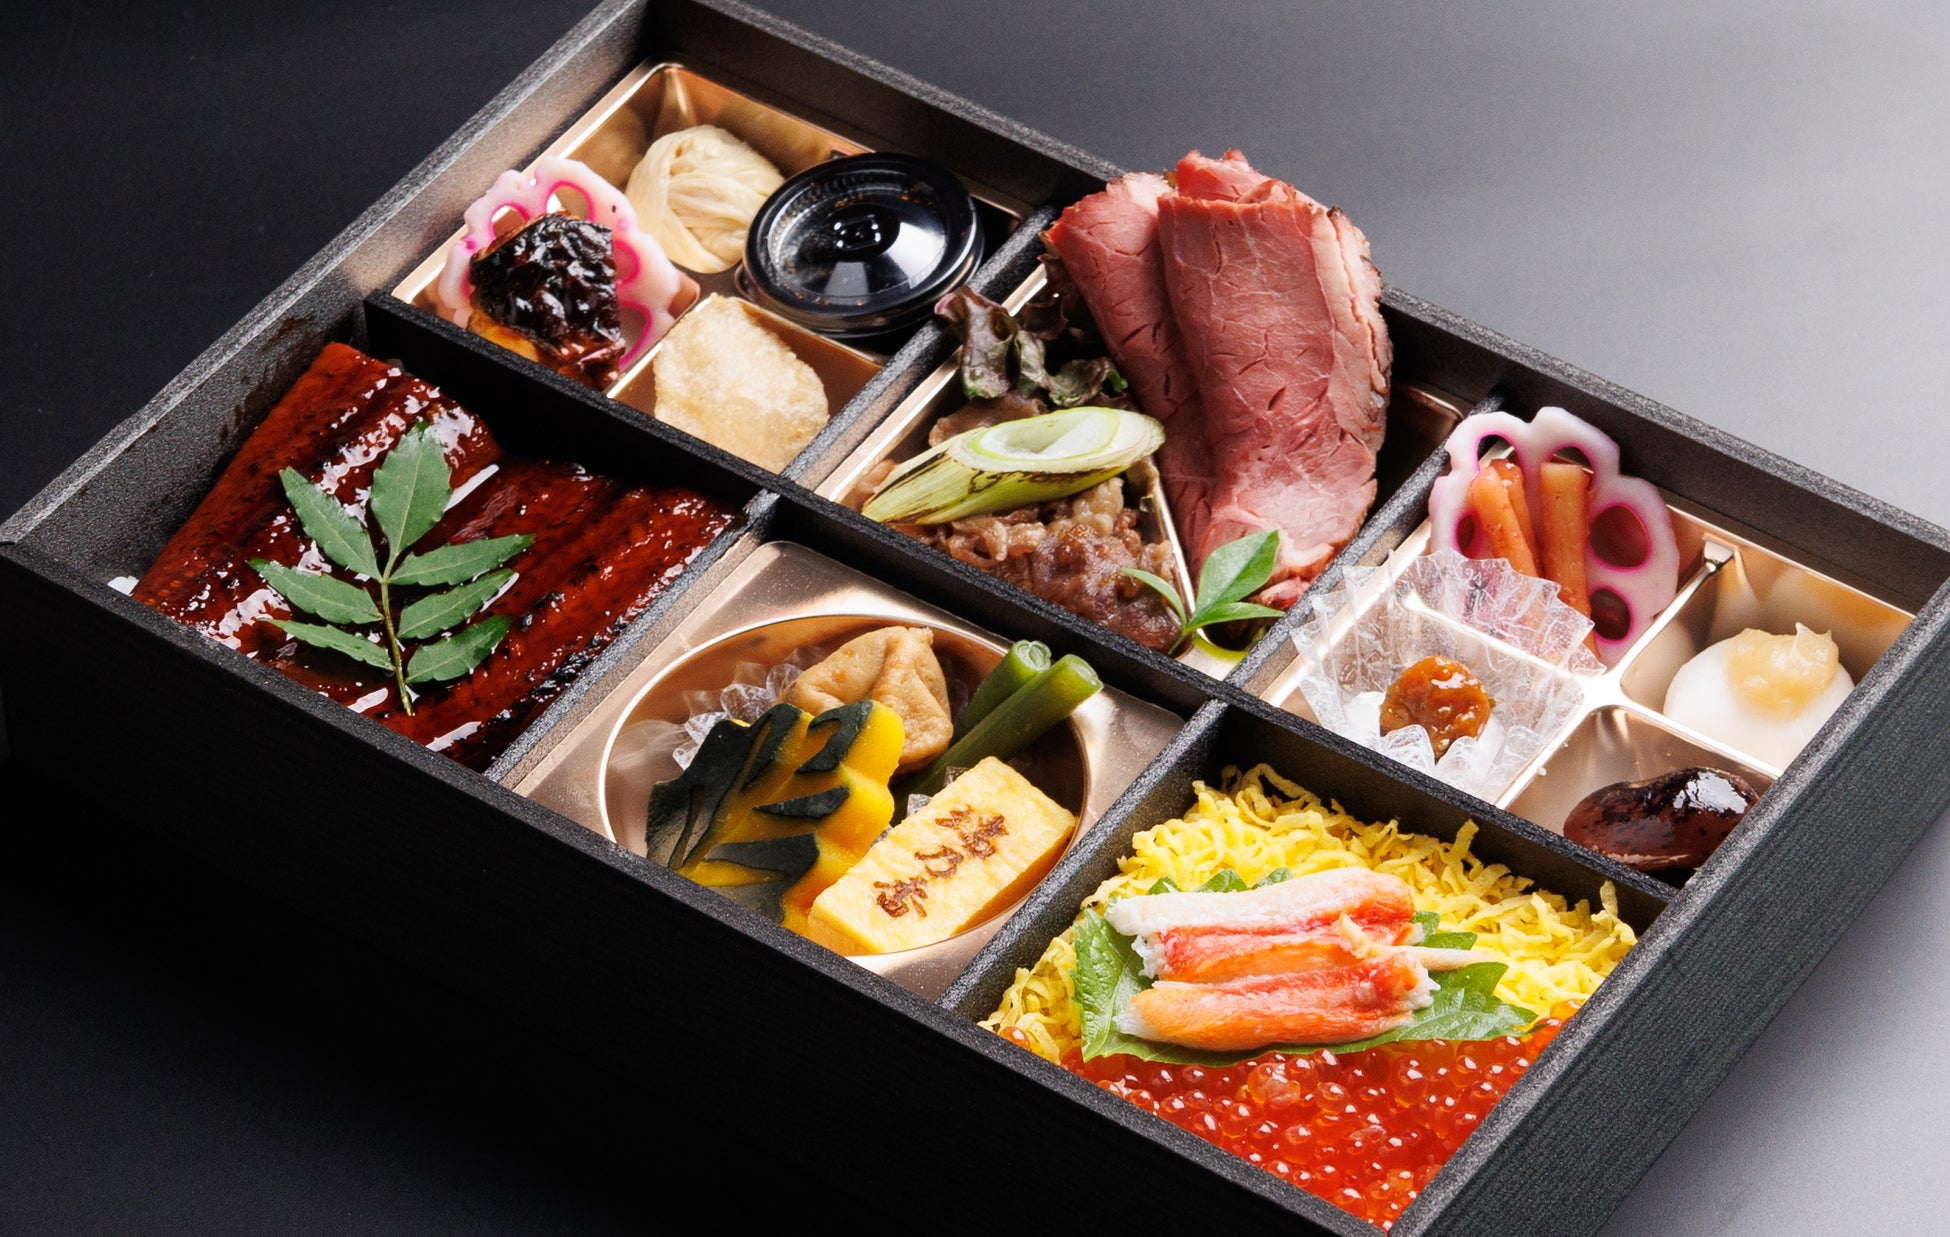 法人向け高級弁当の「和匠 瑞乃香」が、法人向け弁当販売サイト「結膳～yuizen～」様にて埼玉県１位を獲得いたしました。